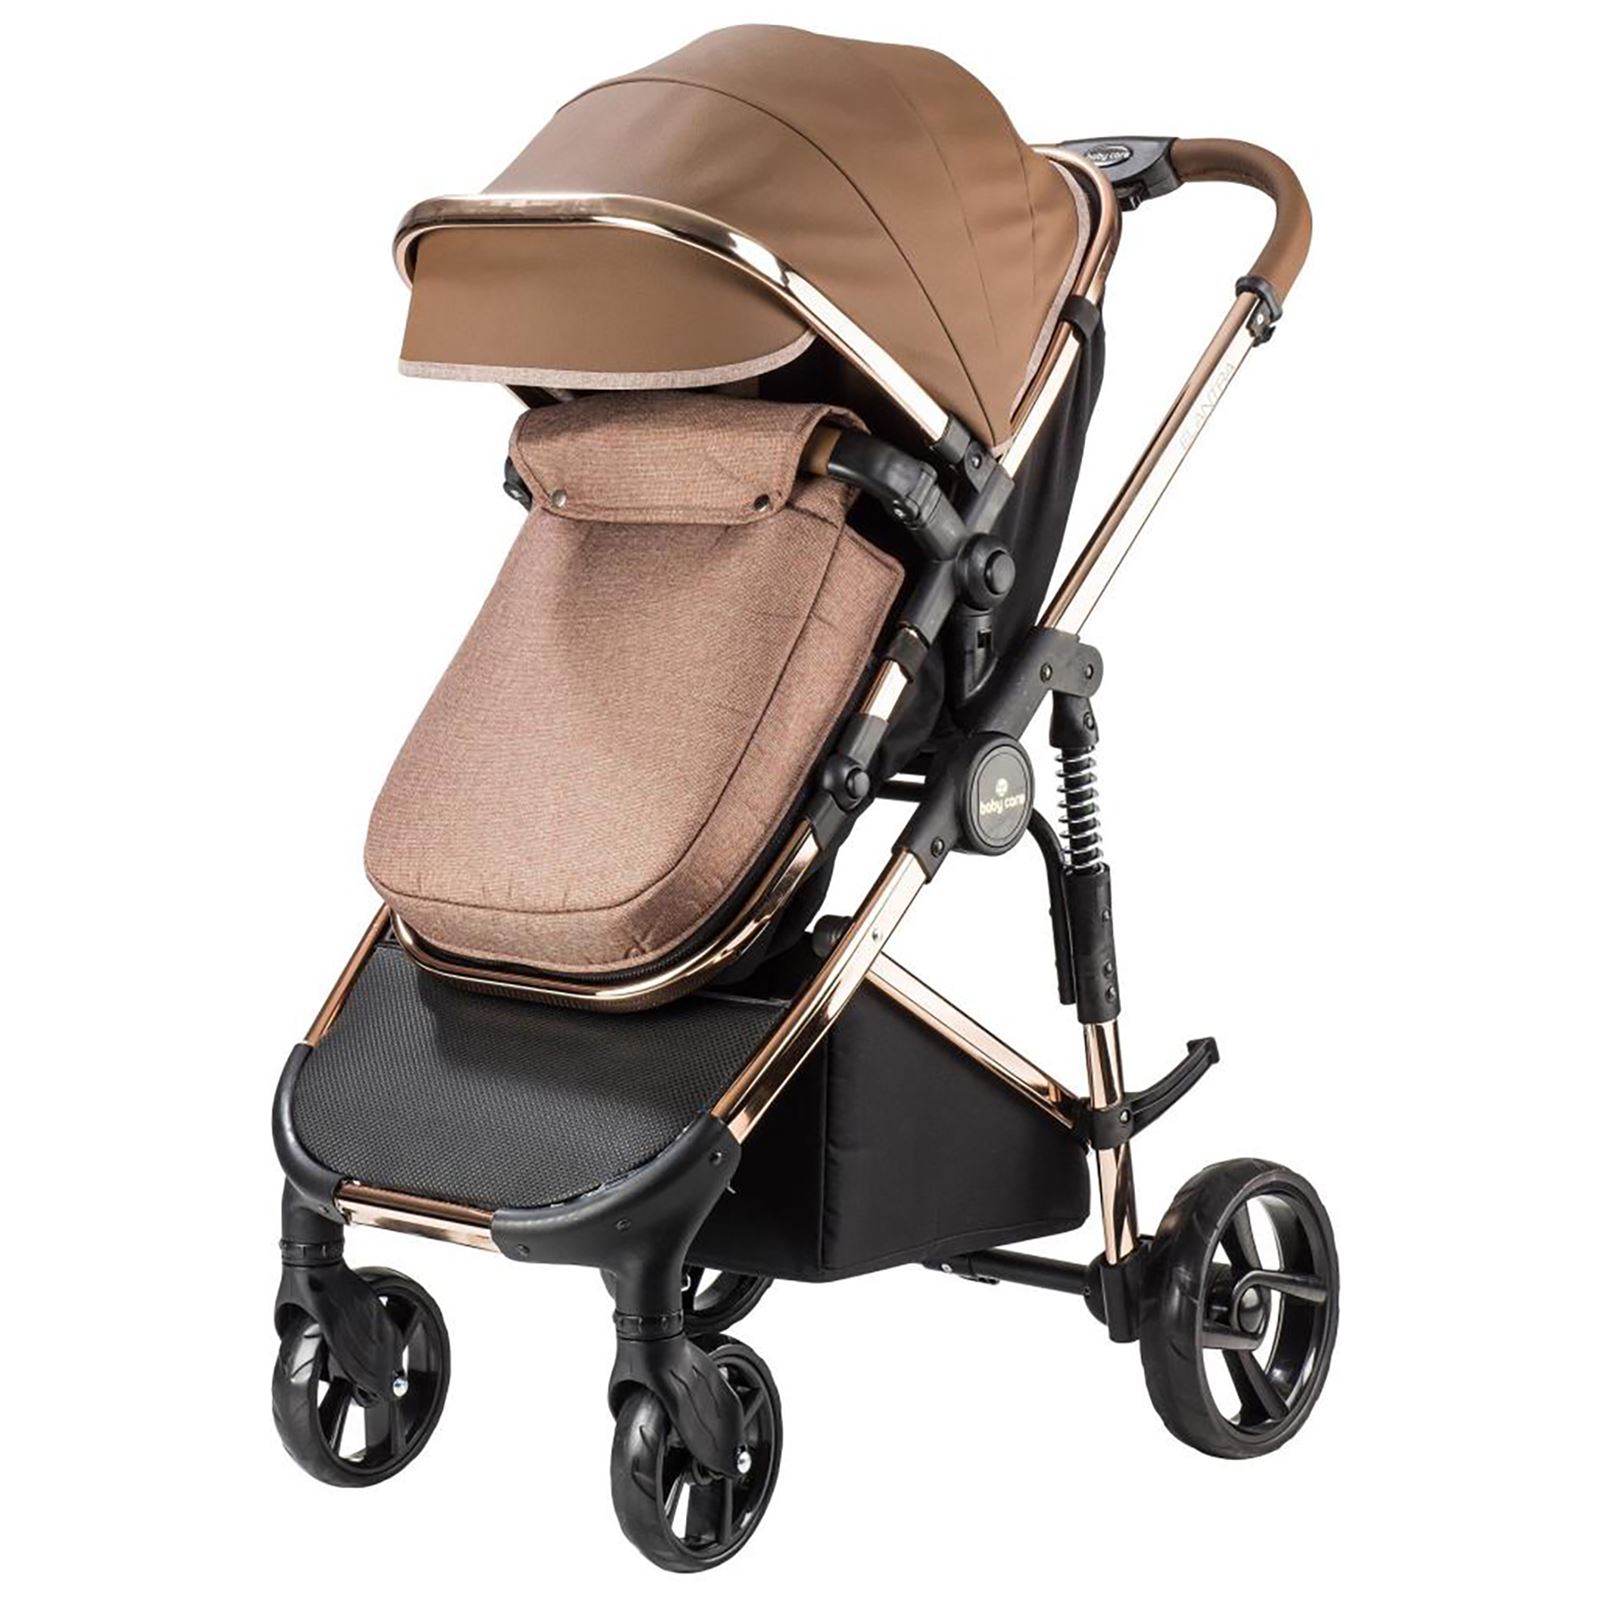 BabyCare Elantra Premium Travel Puset Sistem Bebek Arabası Gri